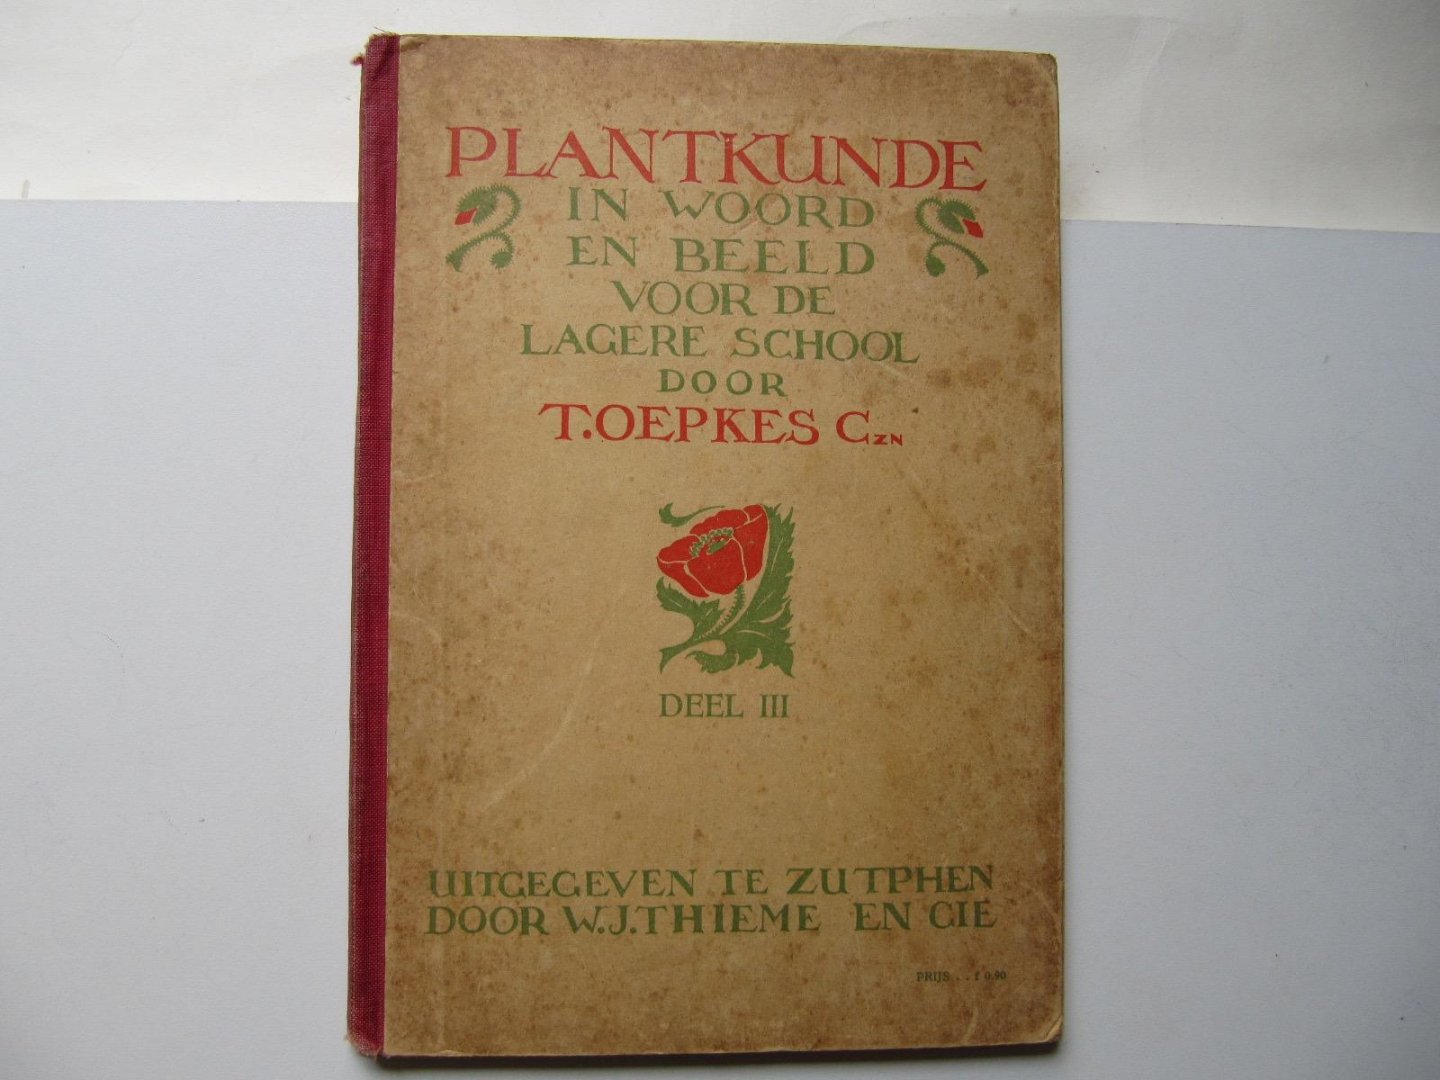 T. oepkes - Plantkunde in woord en beeld voor de lagere school- deel III